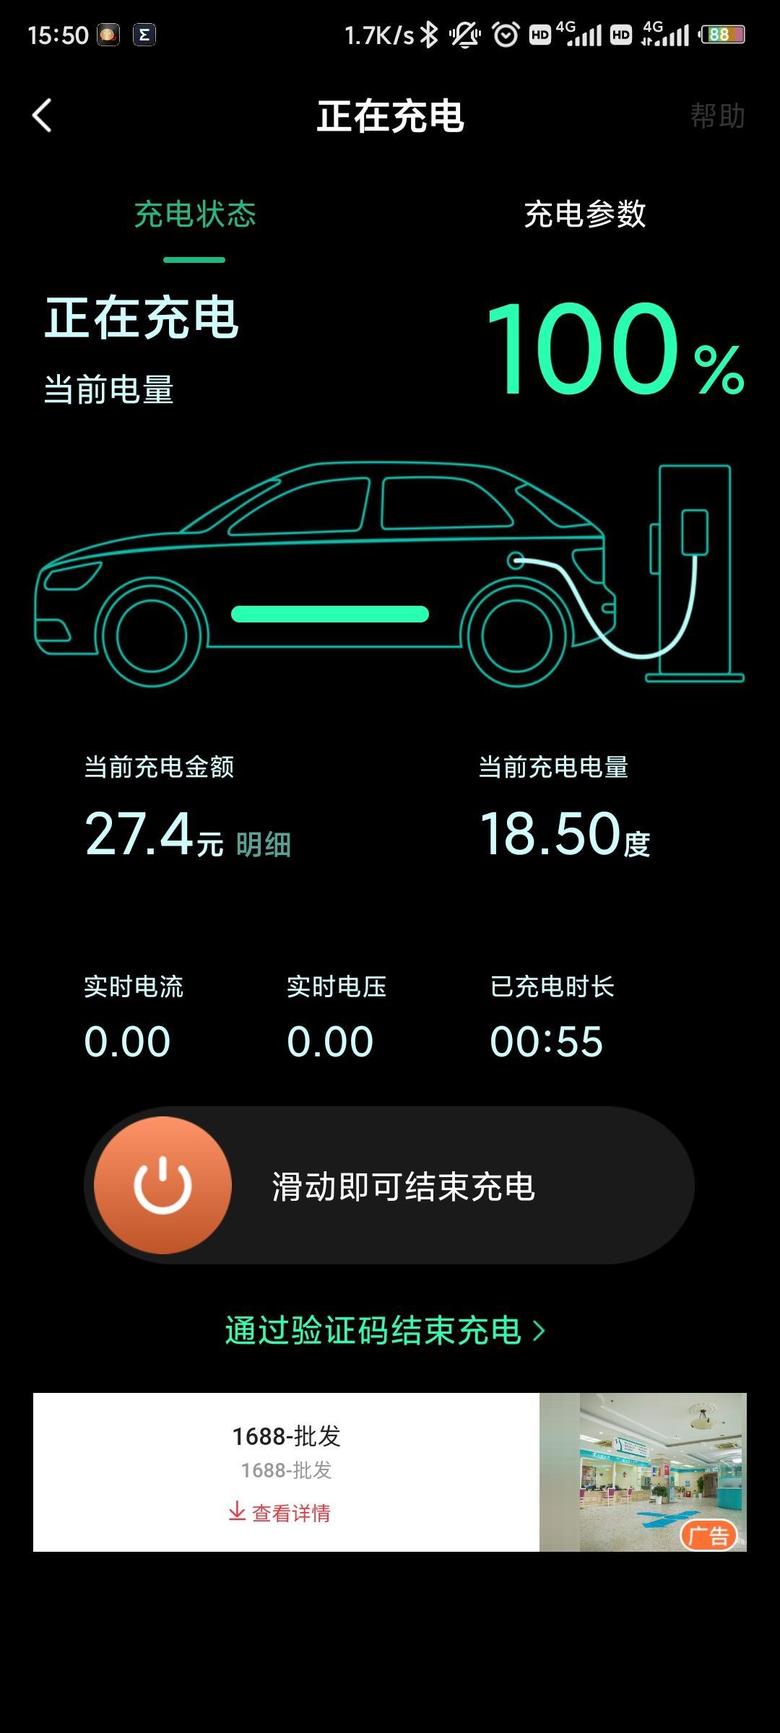 唐dm 55分钟充满，想找700v的设备，打开e充电app，可以找到每个终端的电压，找700v以上即可因为上海市的智能充电桩还没拿到，装，先快充⬇️保养电池